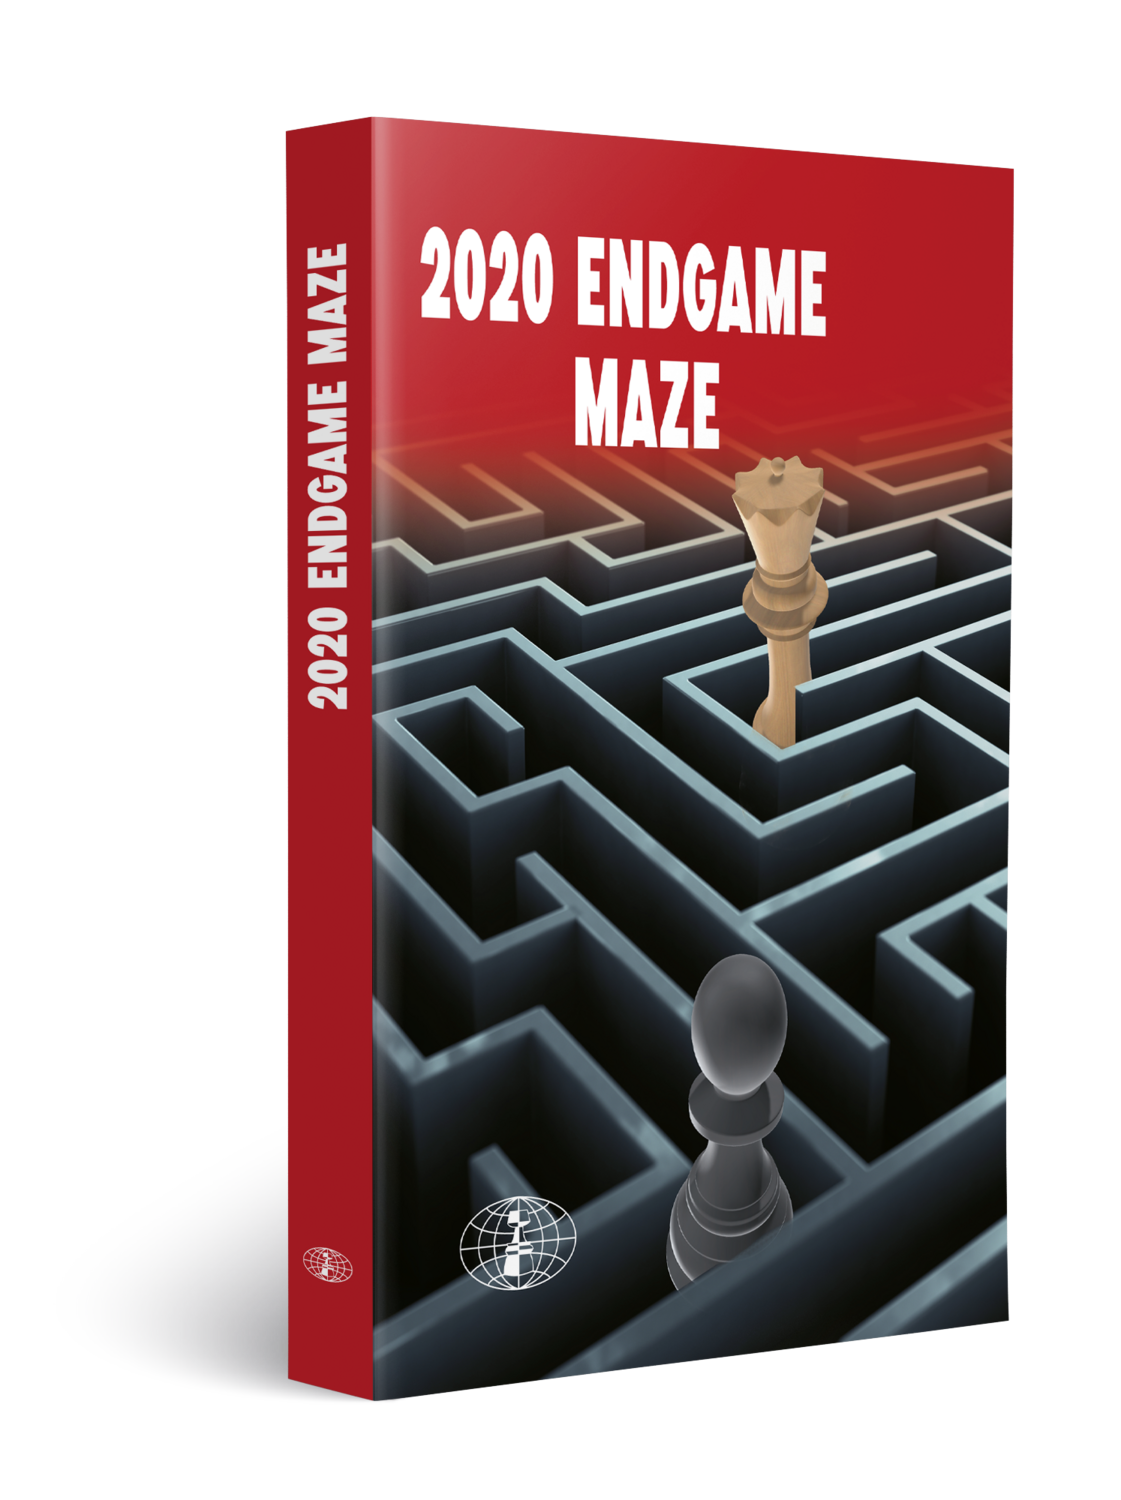 Endgame Maze 2020